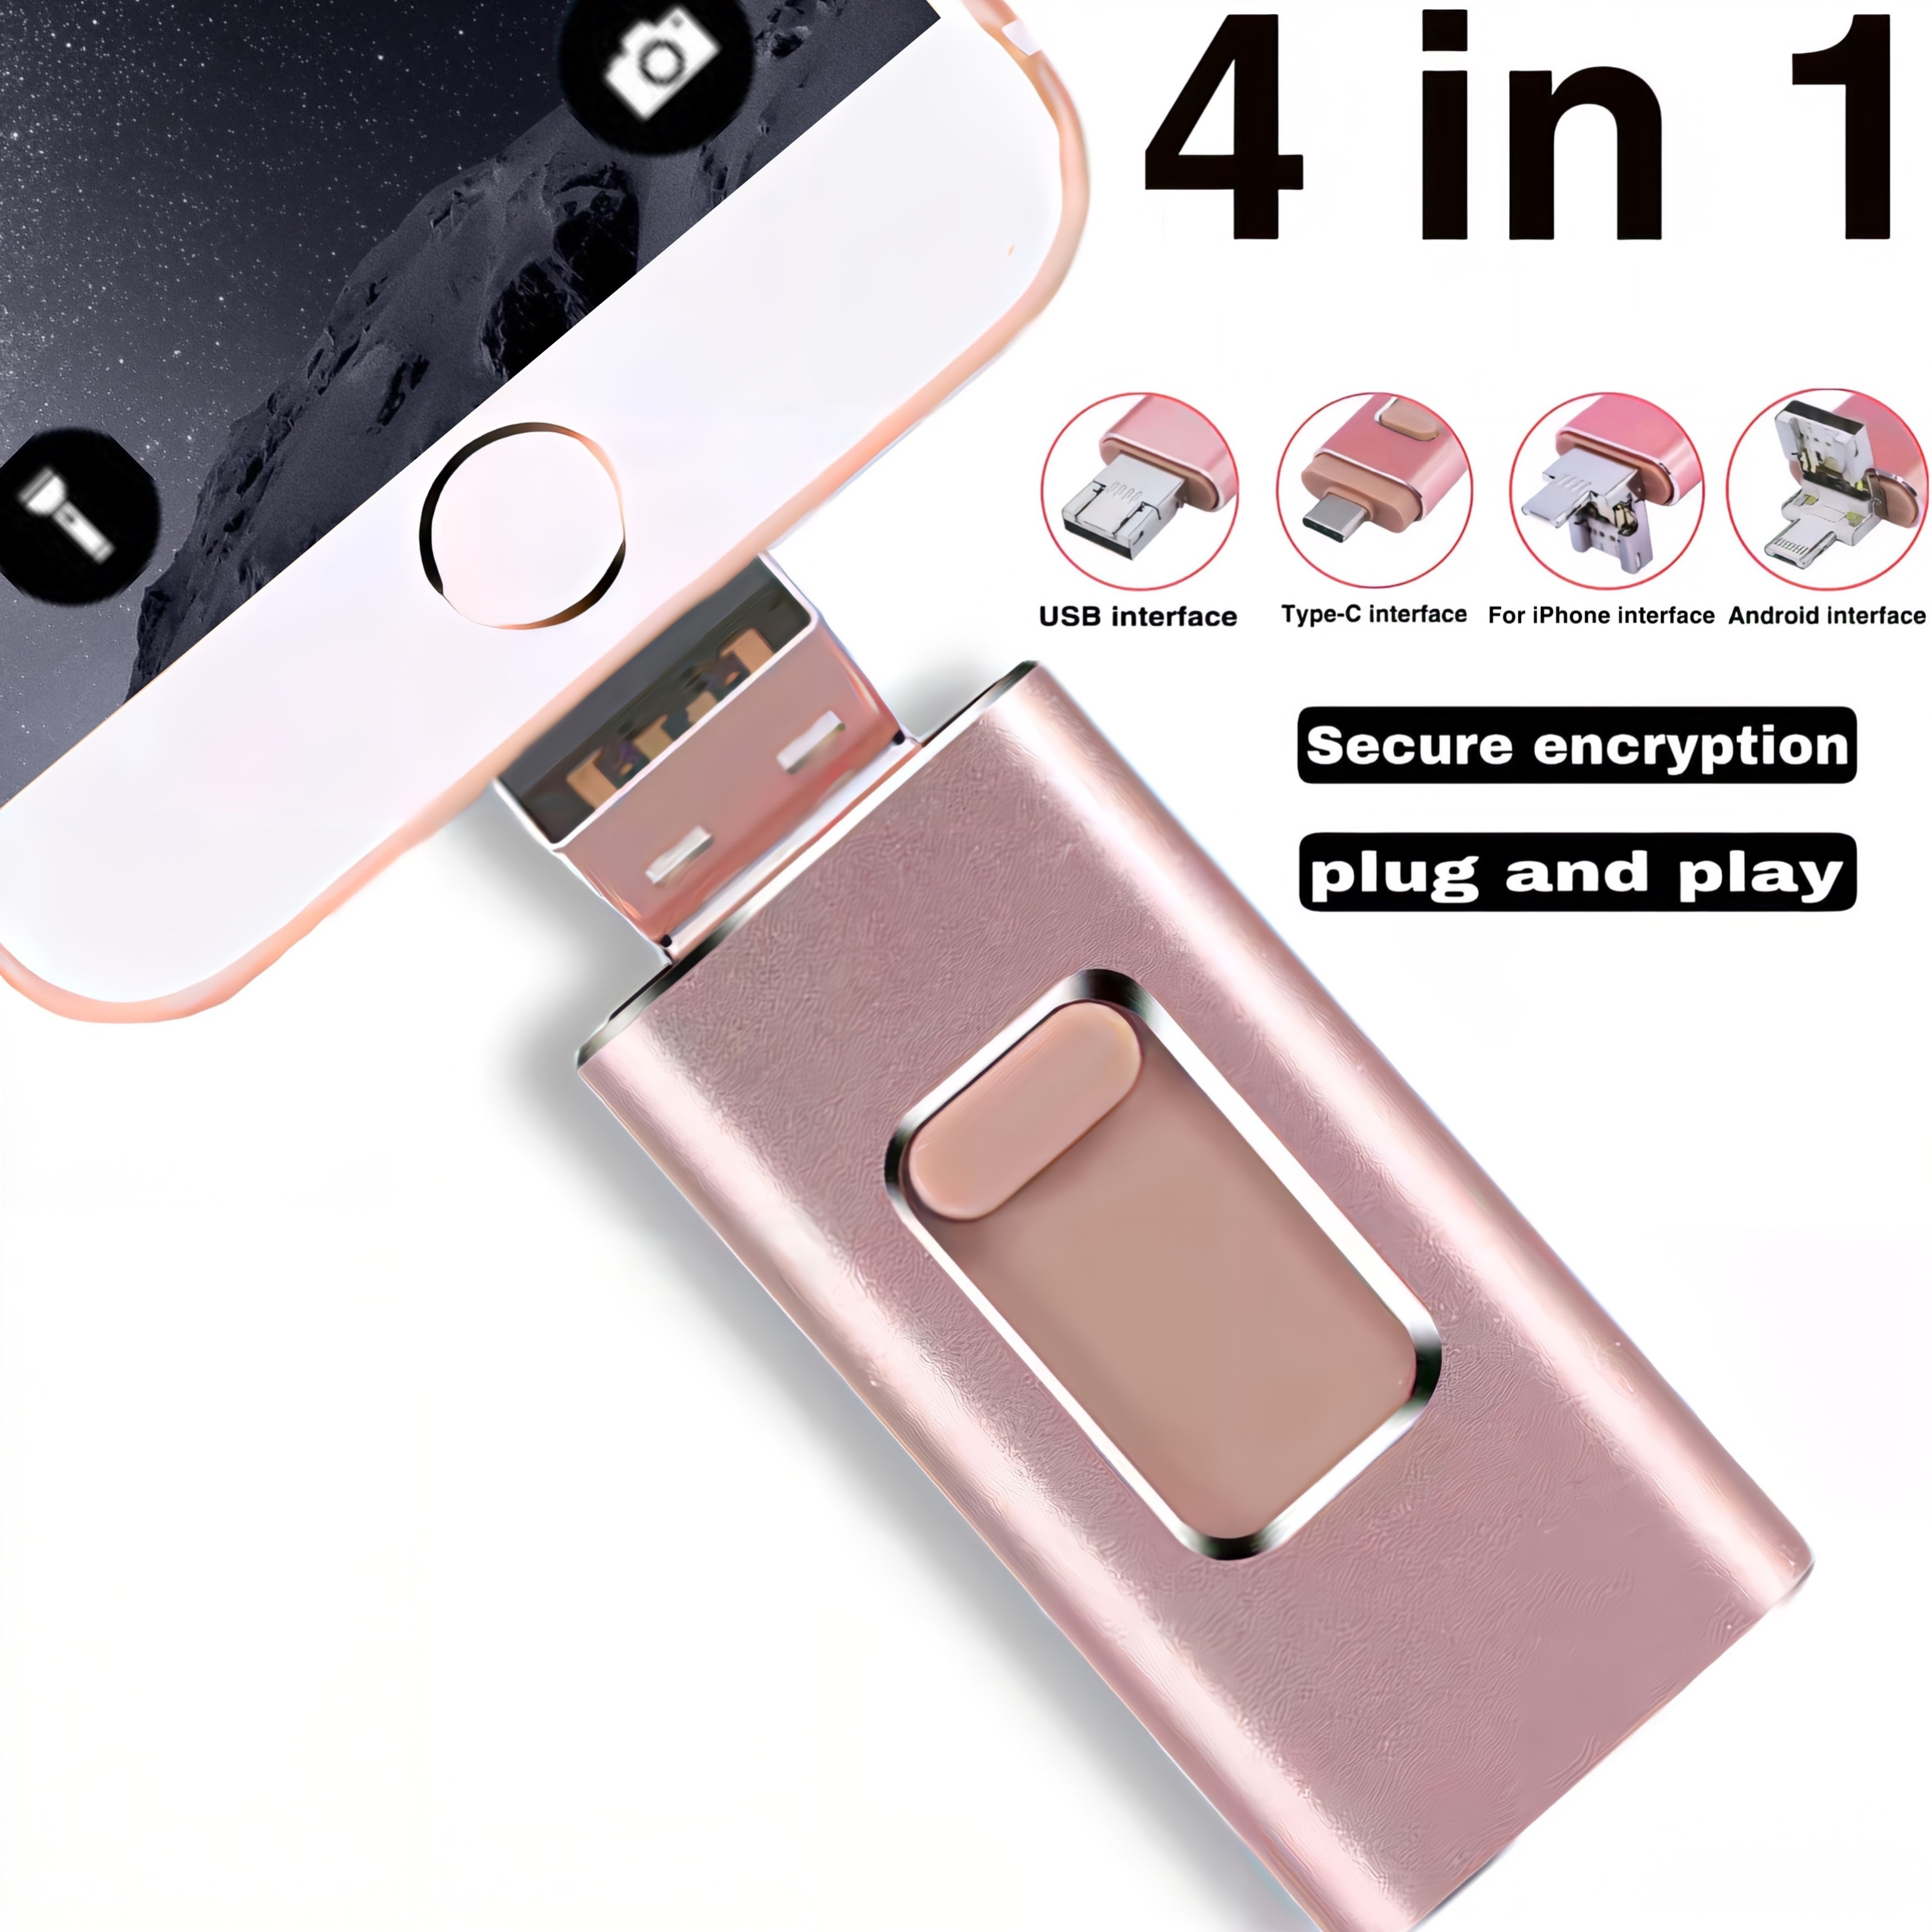 256GO Clé USB 3.0 Stick Rotatif Pendrive Mémoire Flash Externe